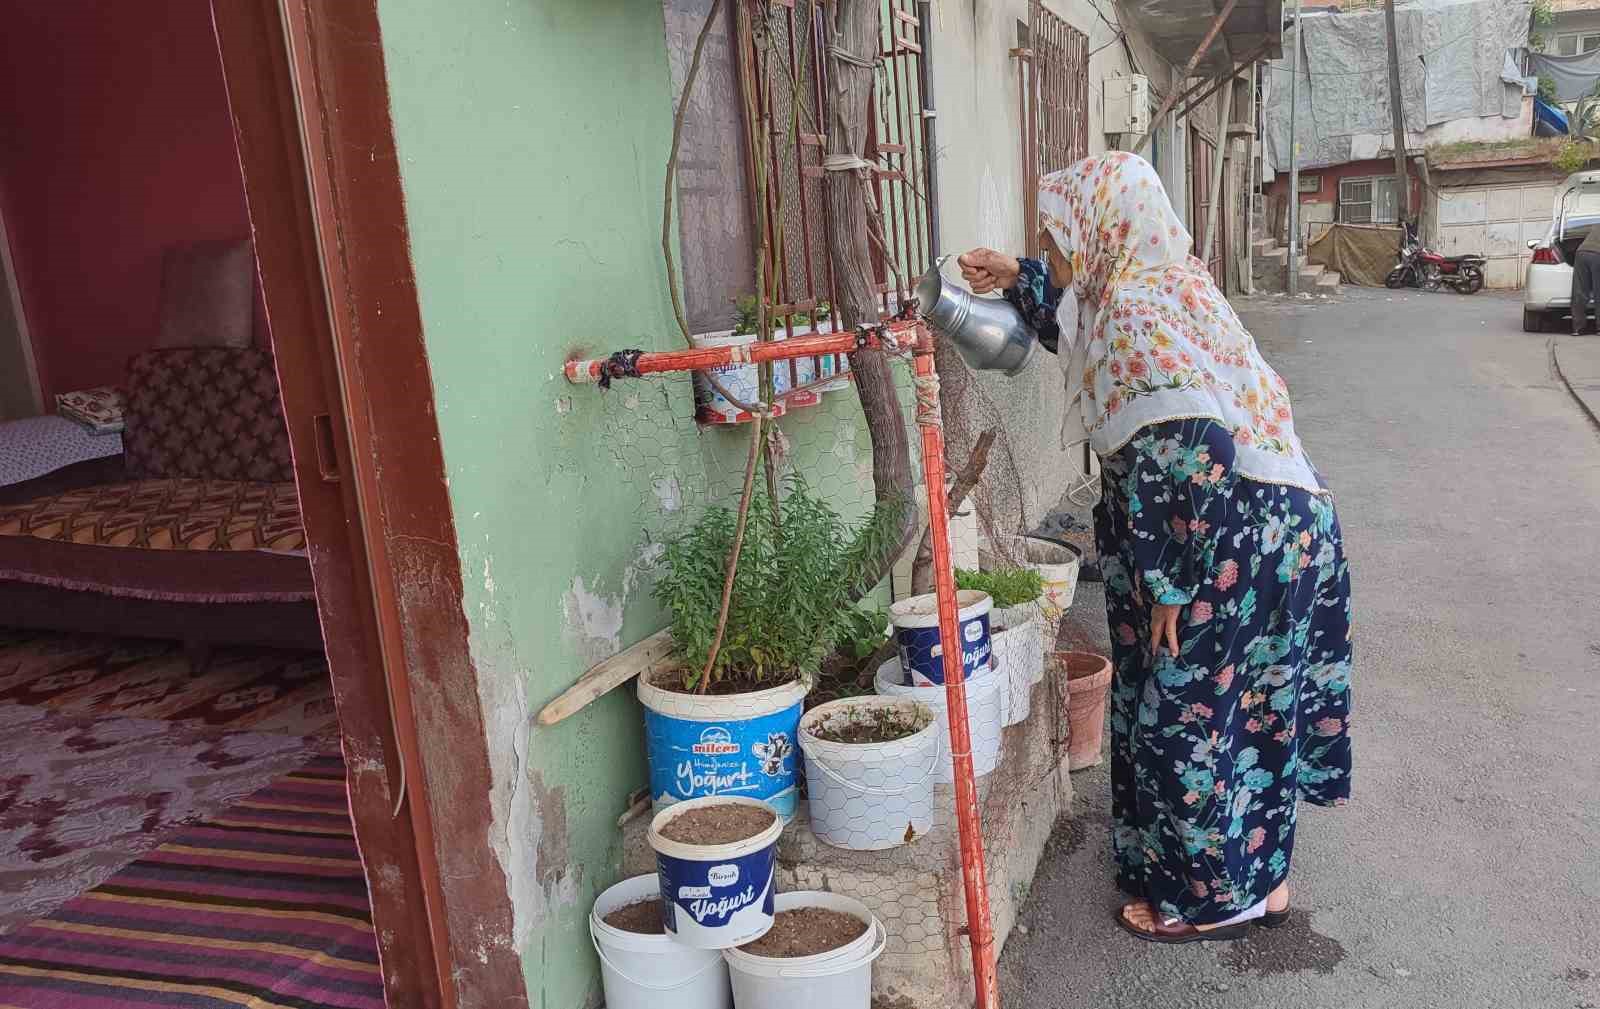 83 yaşındaki Fatma teyze her gün evinin önünü süpürerek örnek oluyor
